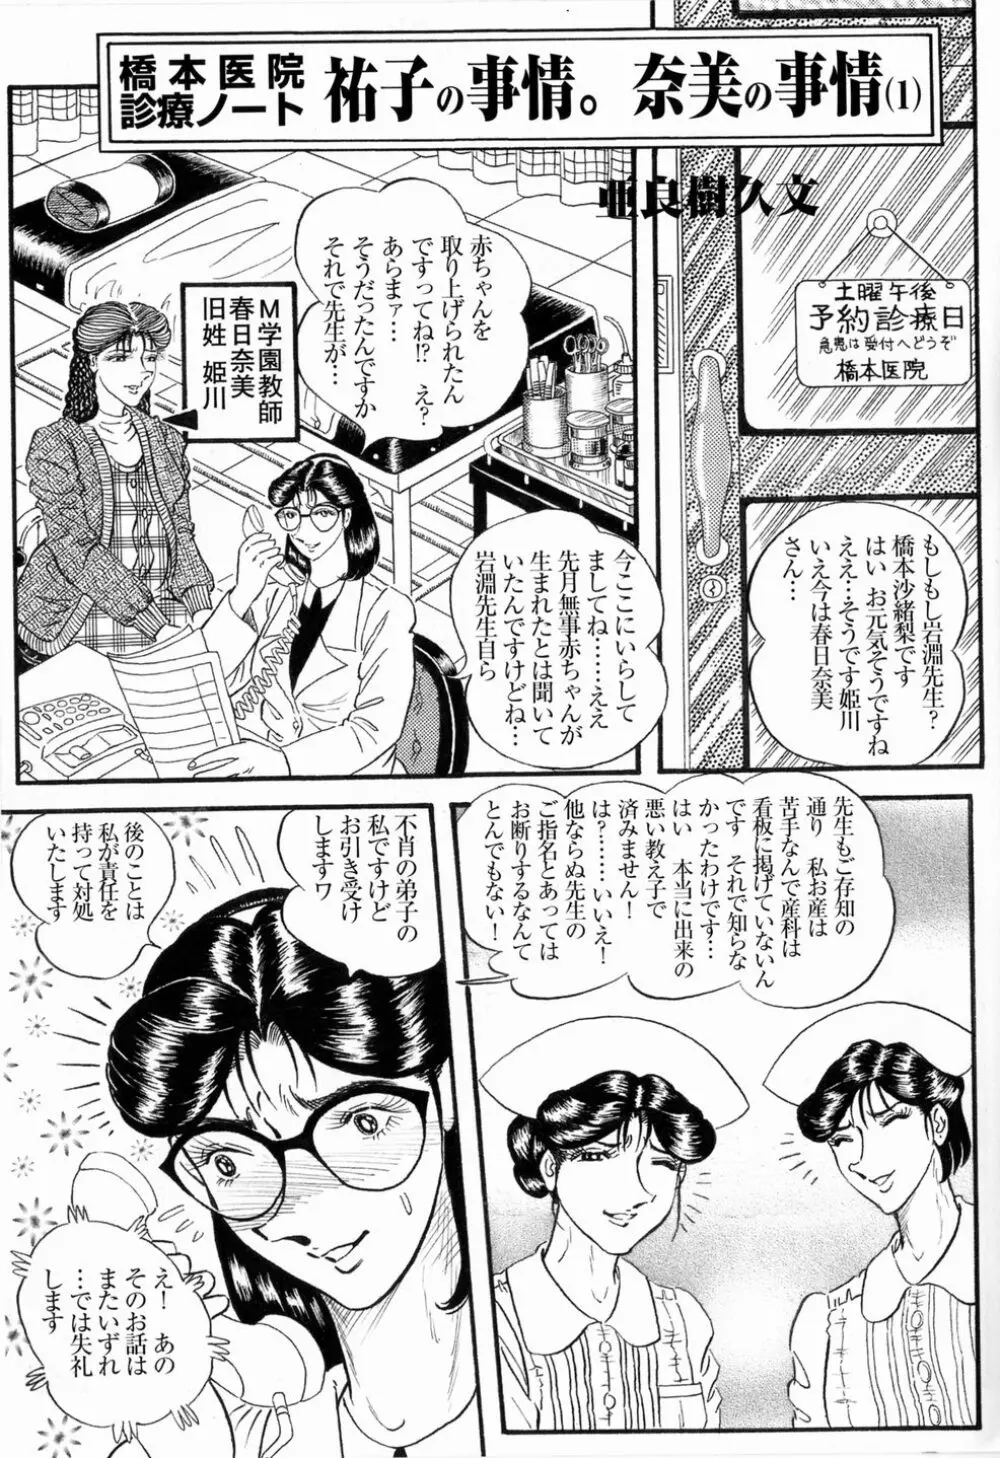 Hashimoto Iin Shinsatsu Note - Yuuko no Jijou Nami no Jijou Page.1